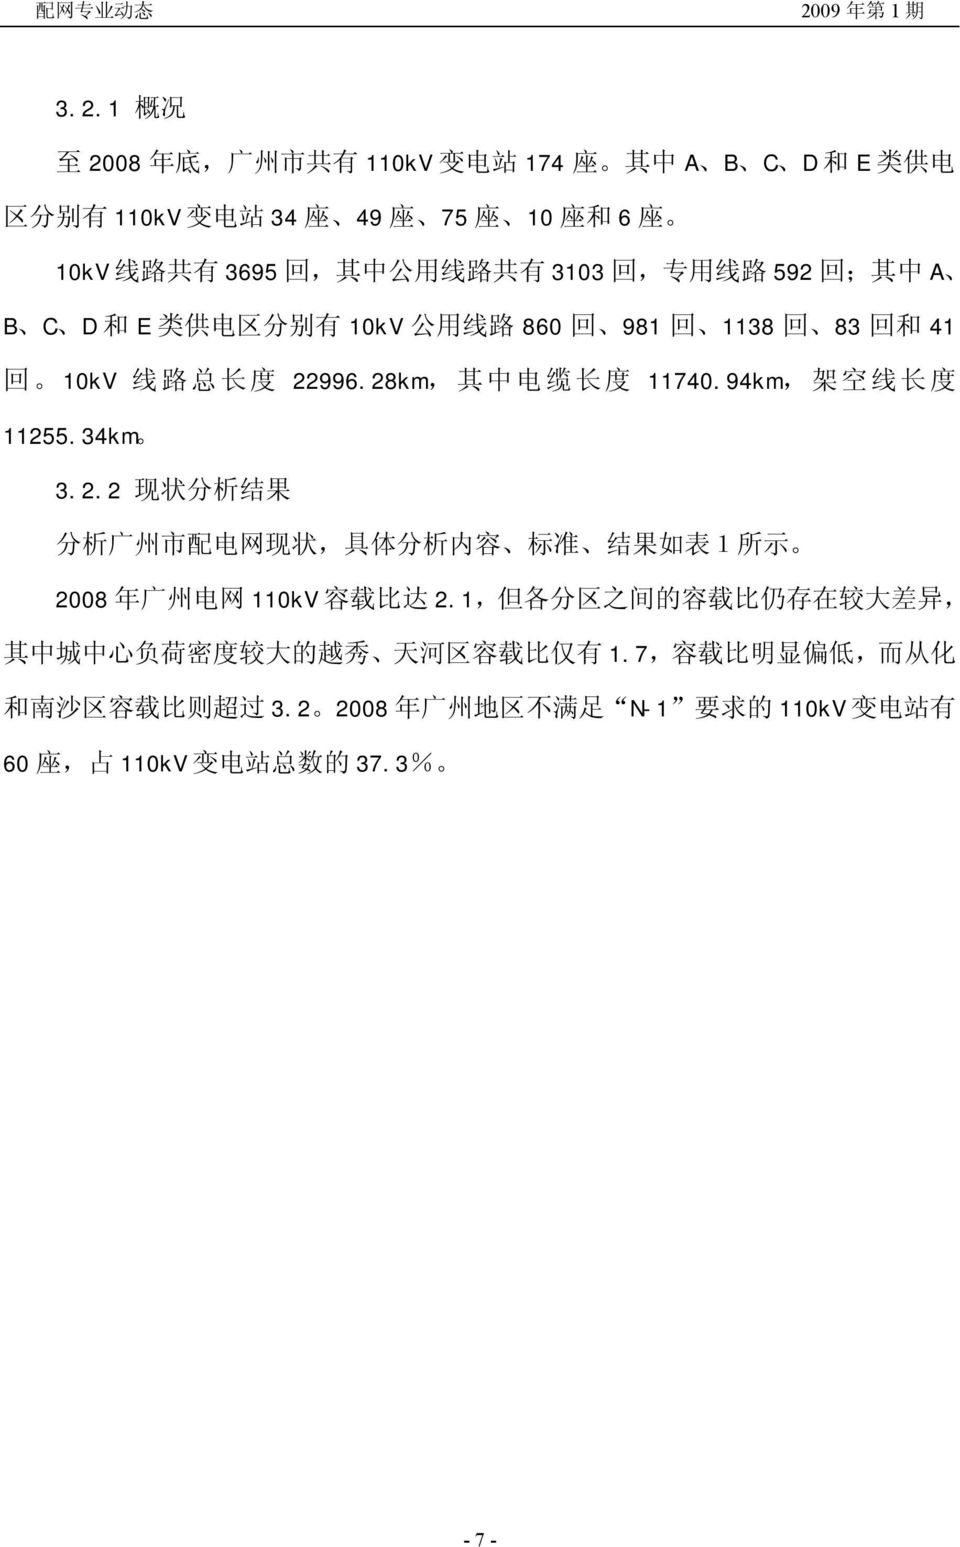 34km 3.2.2 现 状 分 析 结 果 分 析 广 州 市 配 电 网 现 状, 具 体 分 析 内 容 标 准 结 果 如 表 1 所 示 2008 年 广 州 电 网 110kV 容 载 比 达 2.